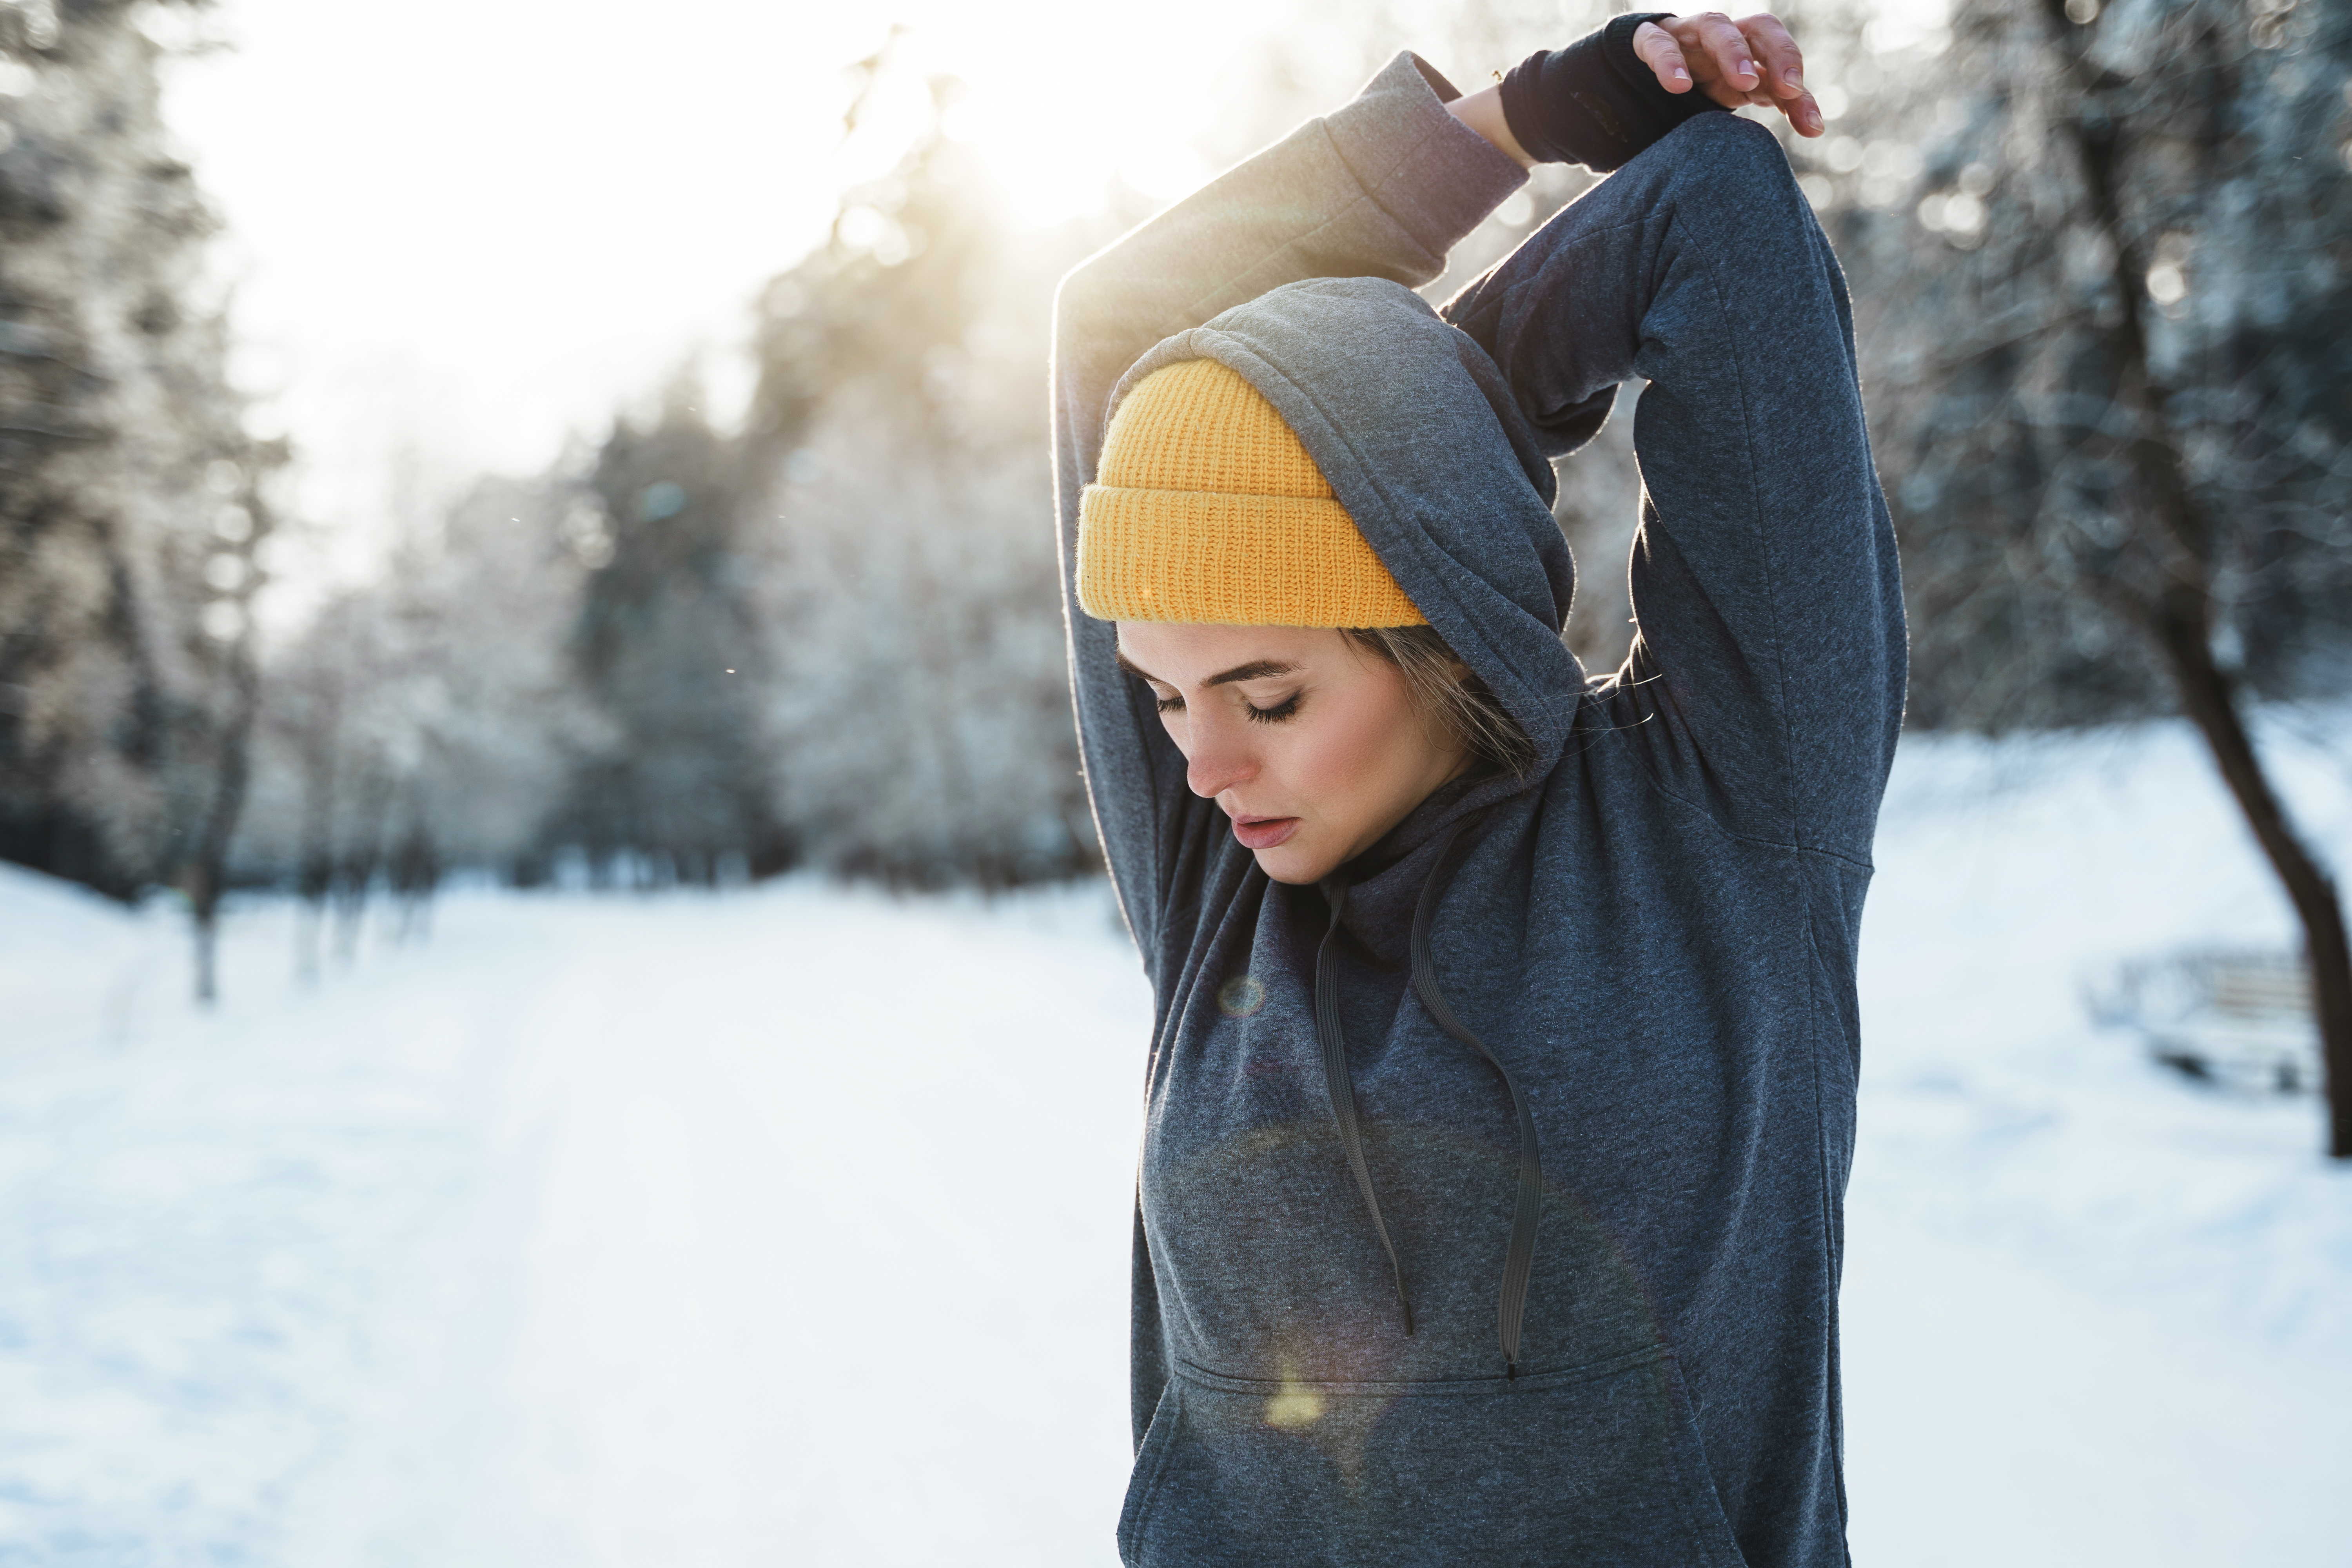 <p><strong>Погрижете се за тялото си</strong></p>

<p>Най-ефективният метод срещу лошо настроение са физическите упражнения. Намерете вашия вид активност и се постарайте да го практикувате редовно през зимата</p>